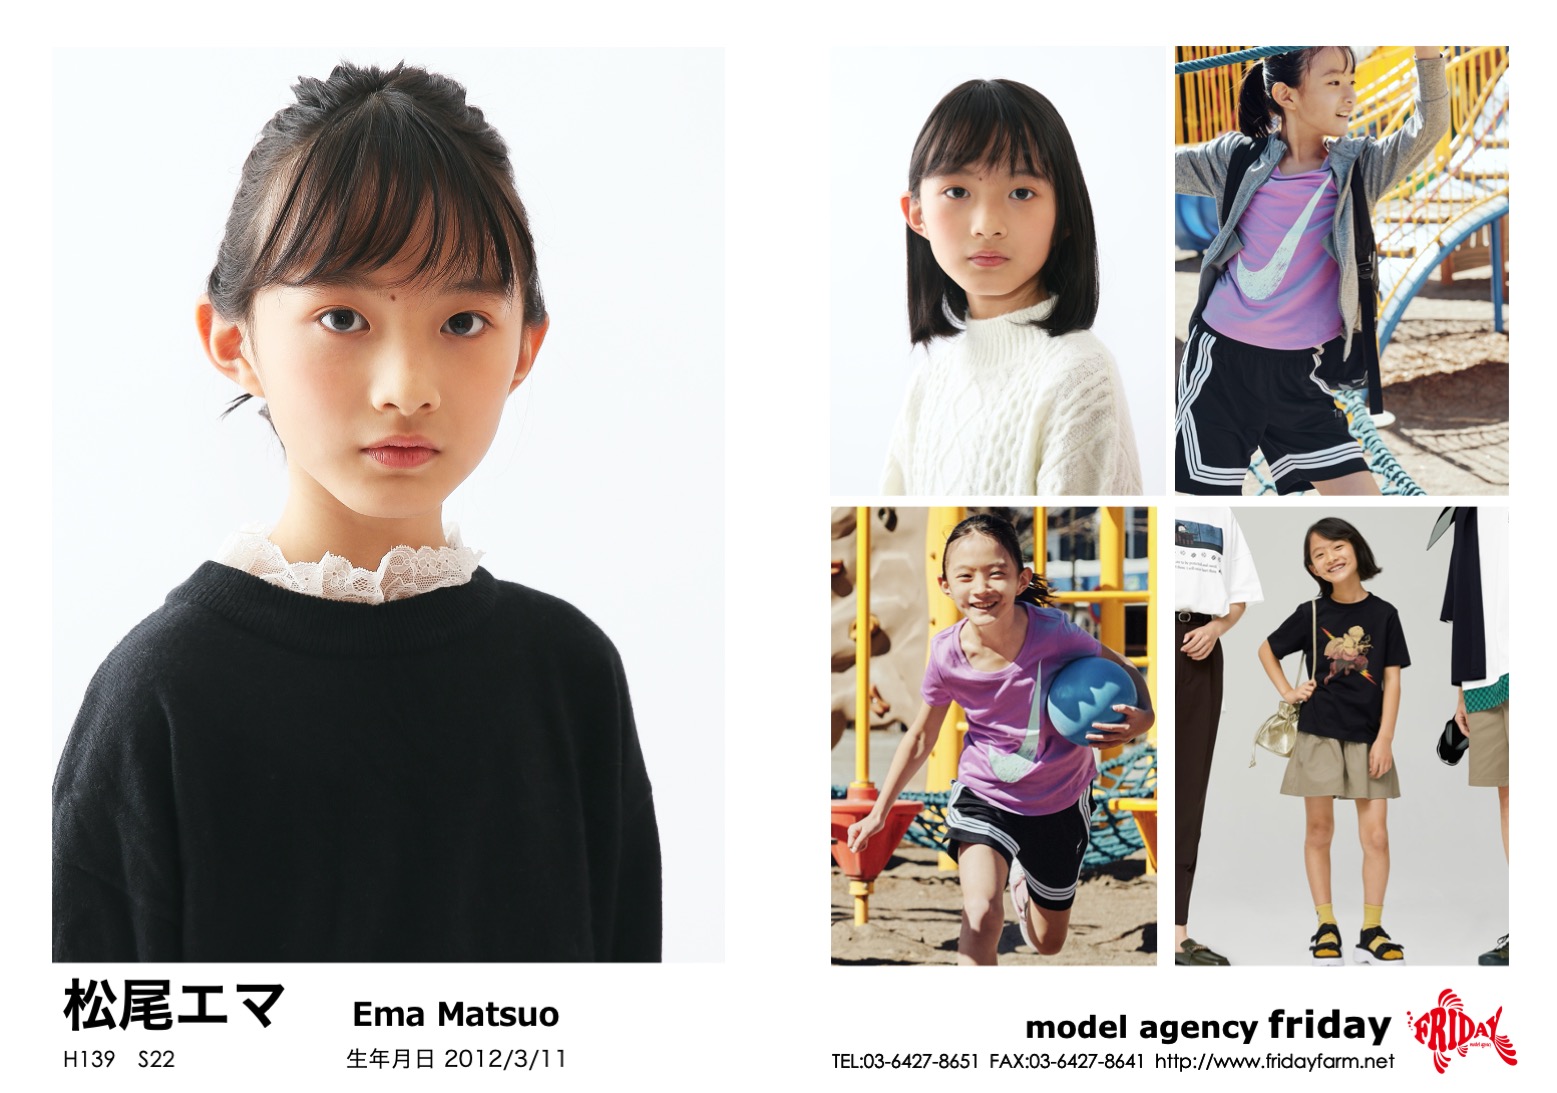 松尾 エマ - Ema Matsuo | model agency friday